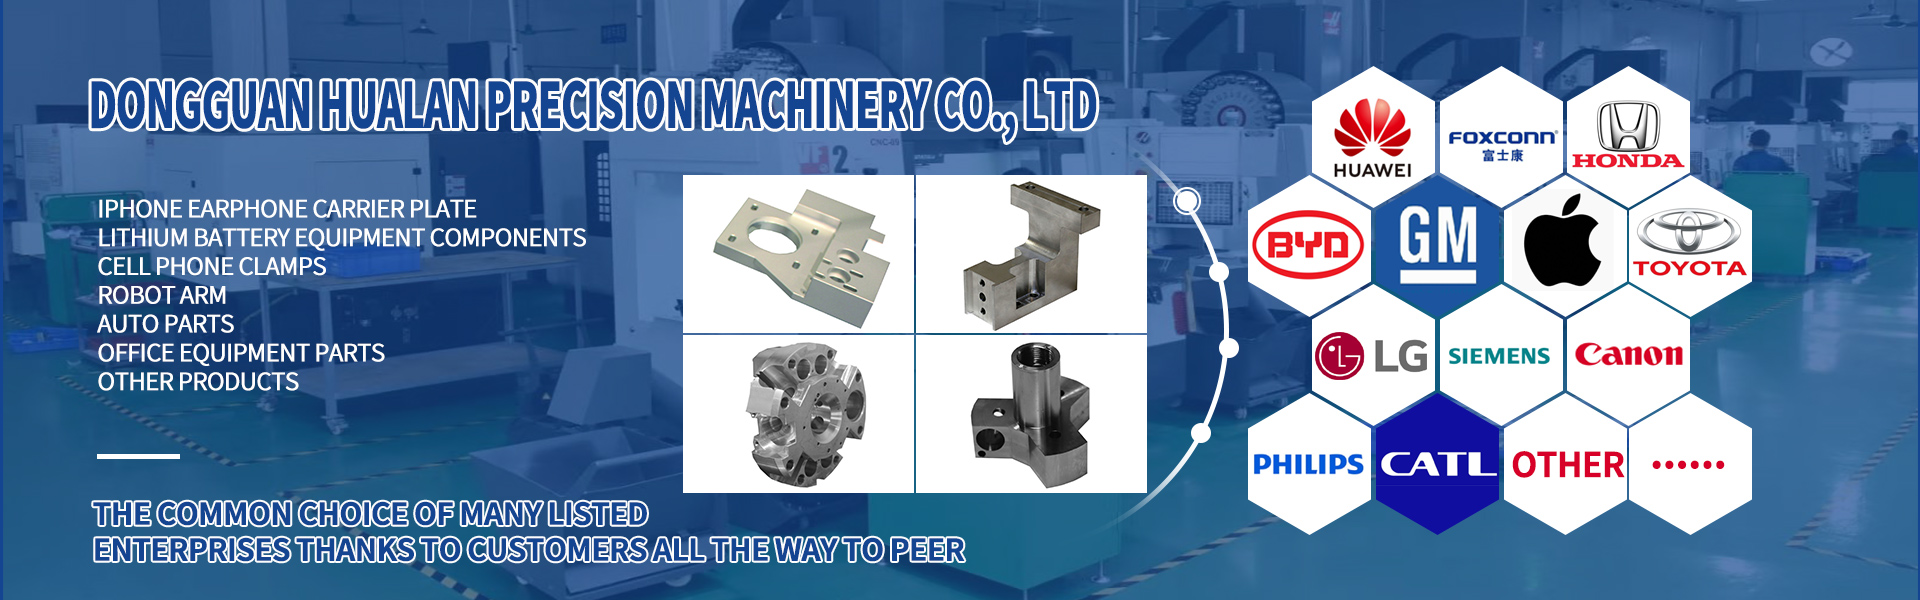 Parti di lavorazione CNC, Turing e fresatura, taglio della linea,Dongguan Hualan Precision Machinery Co., LTD